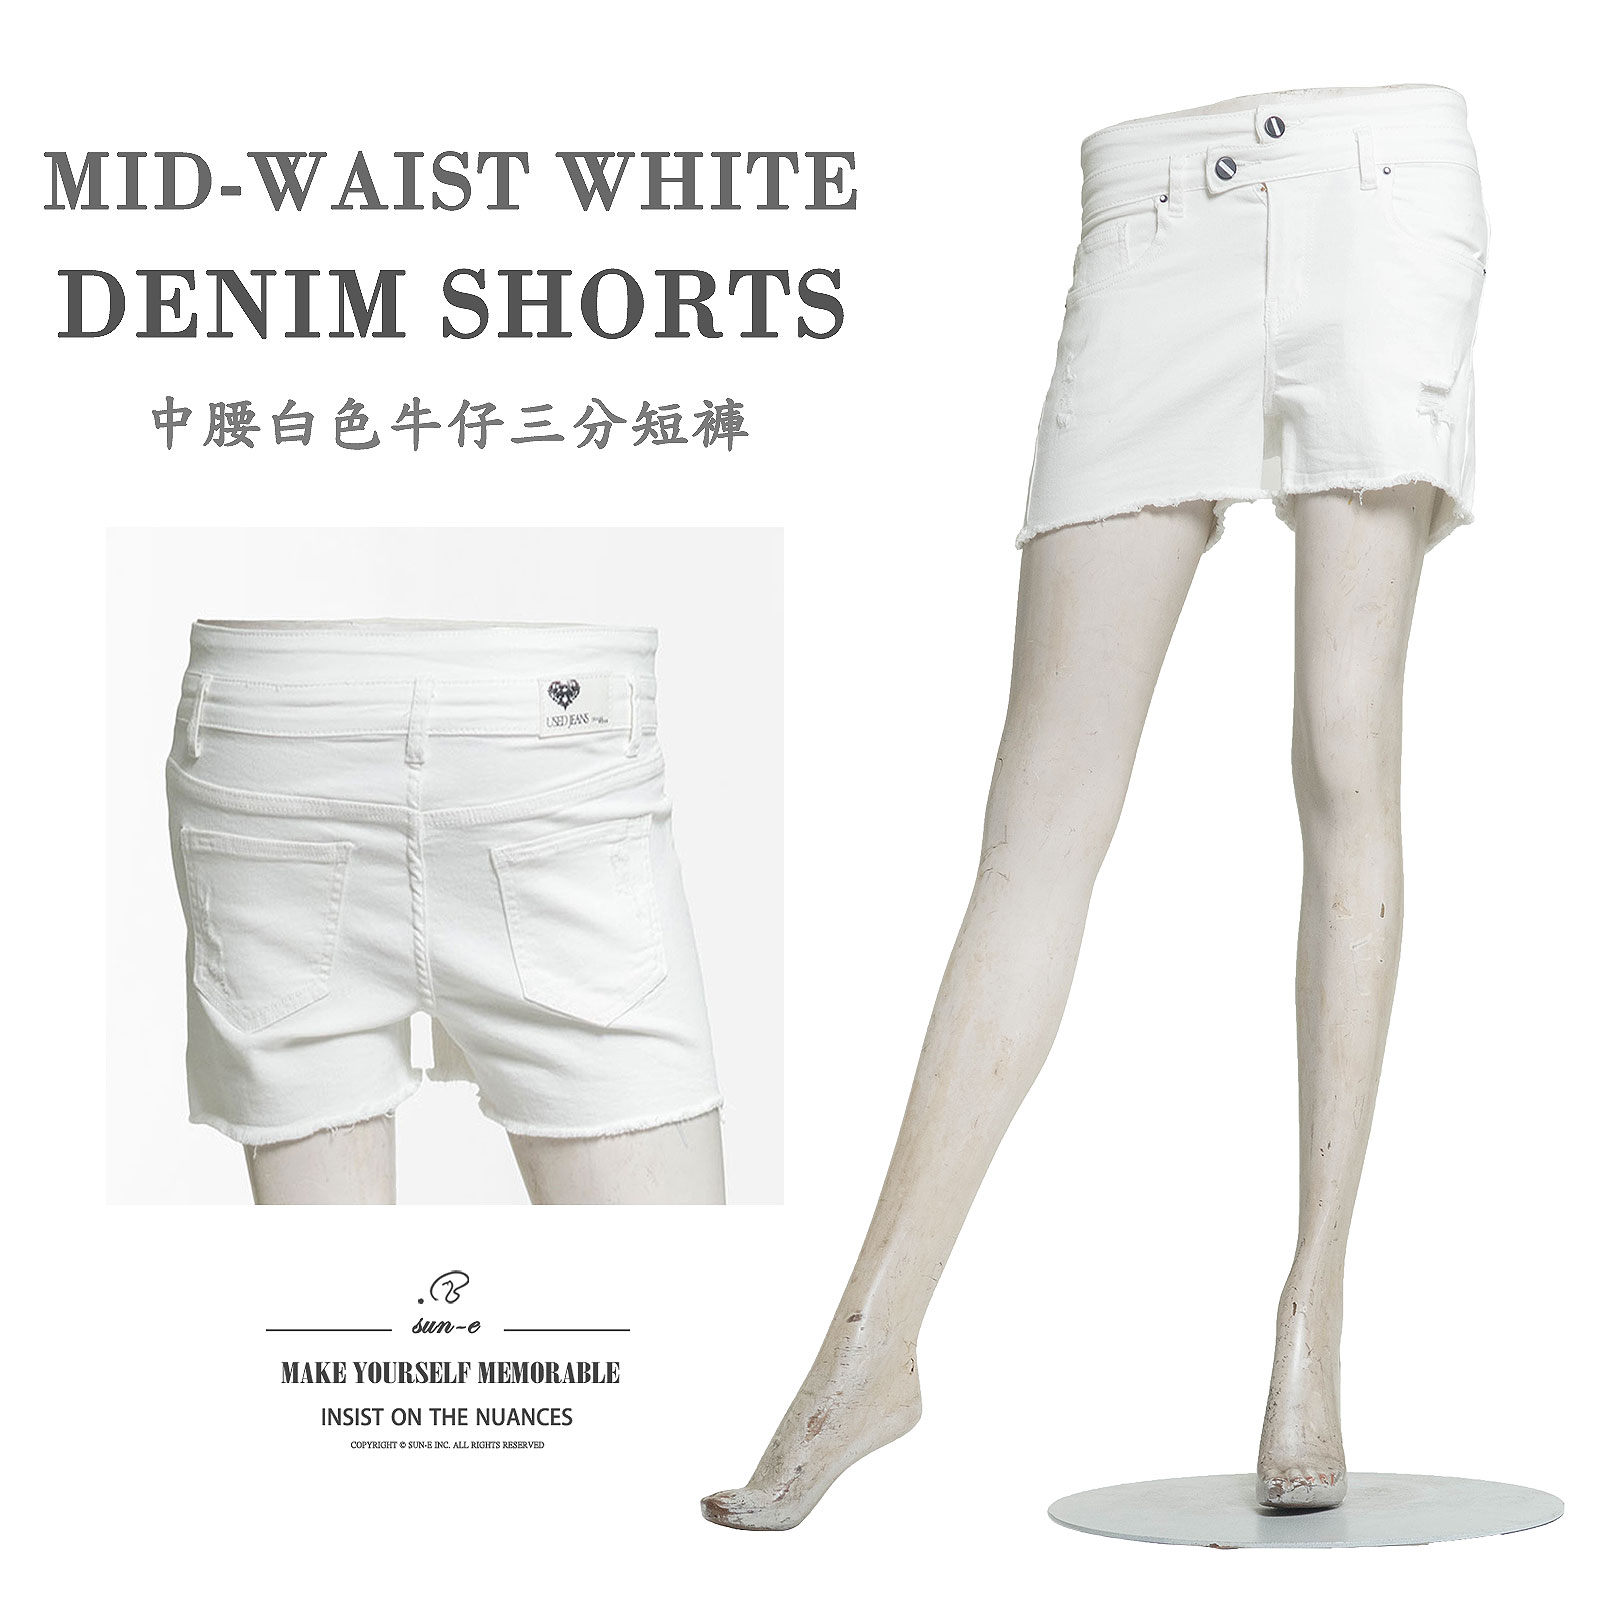 三分牛仔褲 不透明白色牛仔褲 中腰牛仔短褲 雙褲頭牛仔三分褲 鬚邊破洞熱褲 破褲 割破丹寧短褲 不修邊牛仔褲 涼爽顯瘦短褲 3 Inch Inseam White Denim Shorts Non-See-Through White Jeans Mid-rise Stretch Jean Shorts double Waistband Jeans(050-8657-01)白色 S M L XL (腰圍:66~84公分 / 26~33英吋) 女 [實體店面保障] sun-e